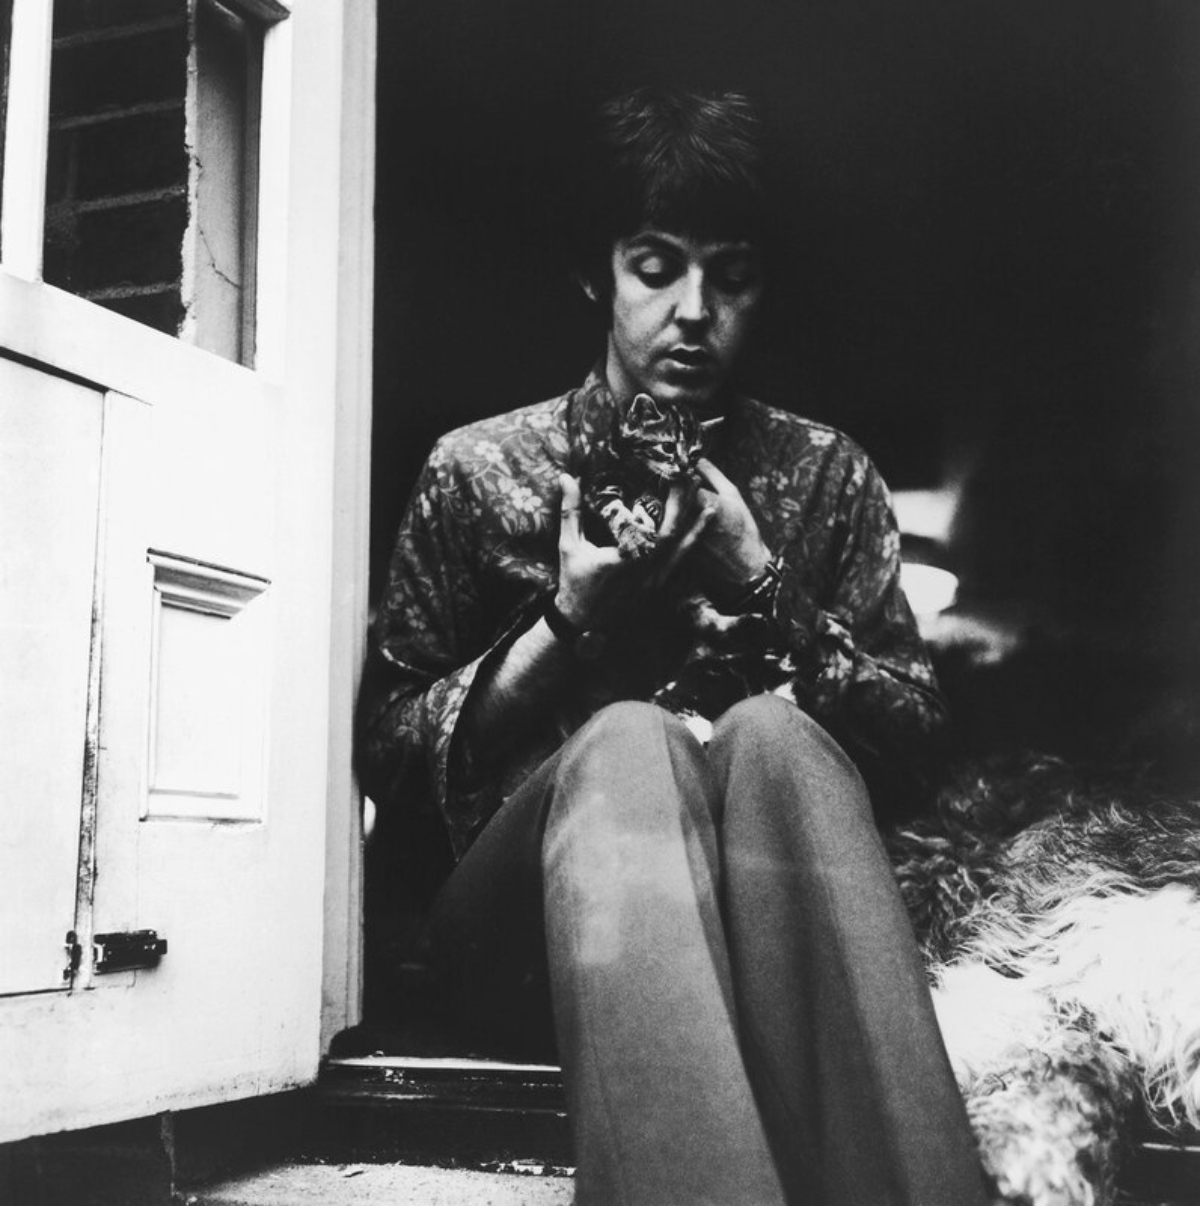 Paul McCartney and a kitten